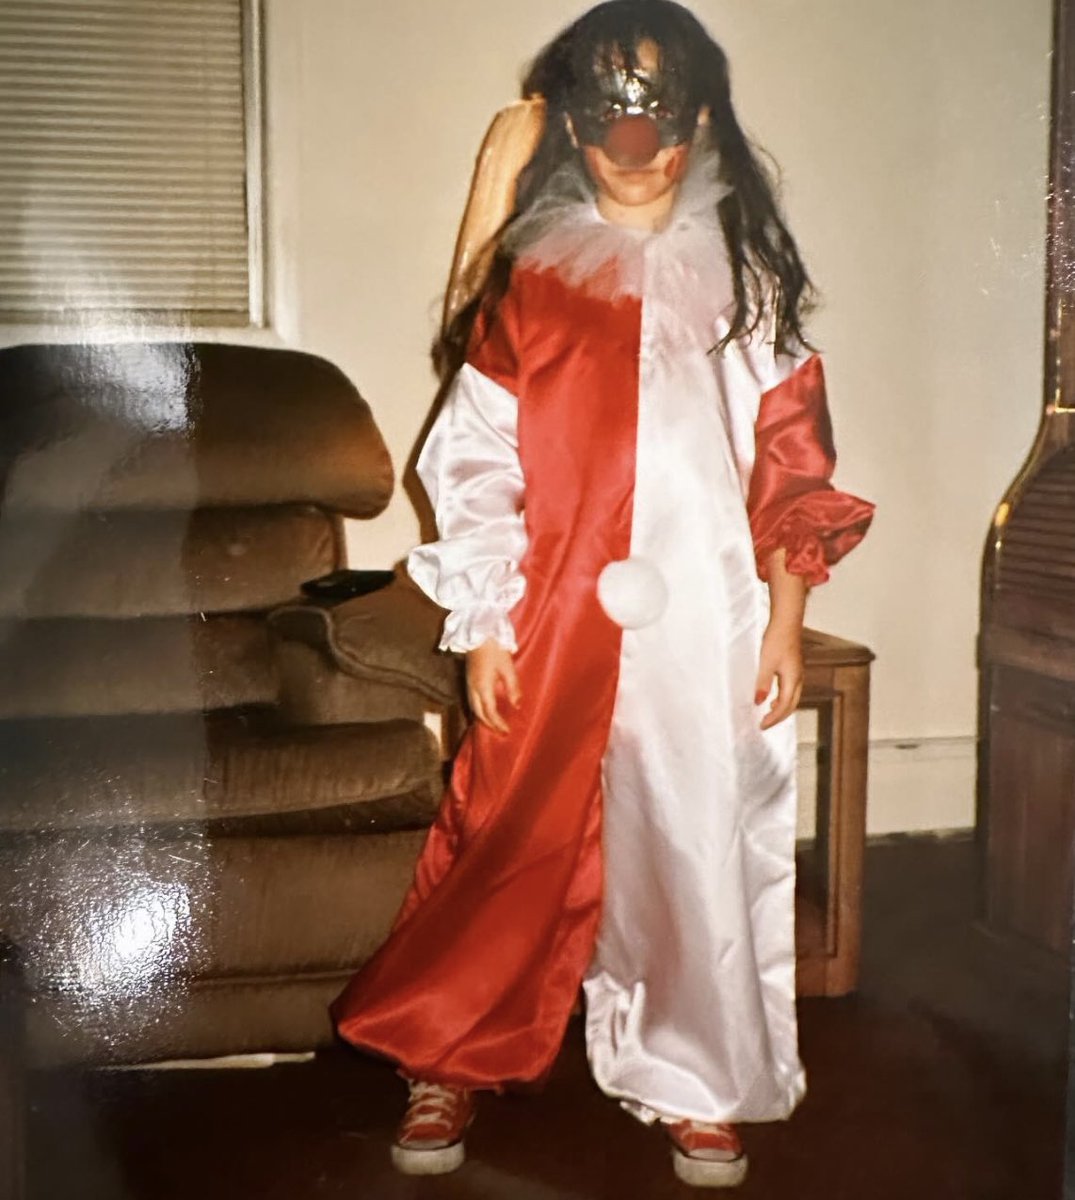 Danielle Harris shares a rare photo as Jamie Lloyd 
#Halloween #DanielleHarris